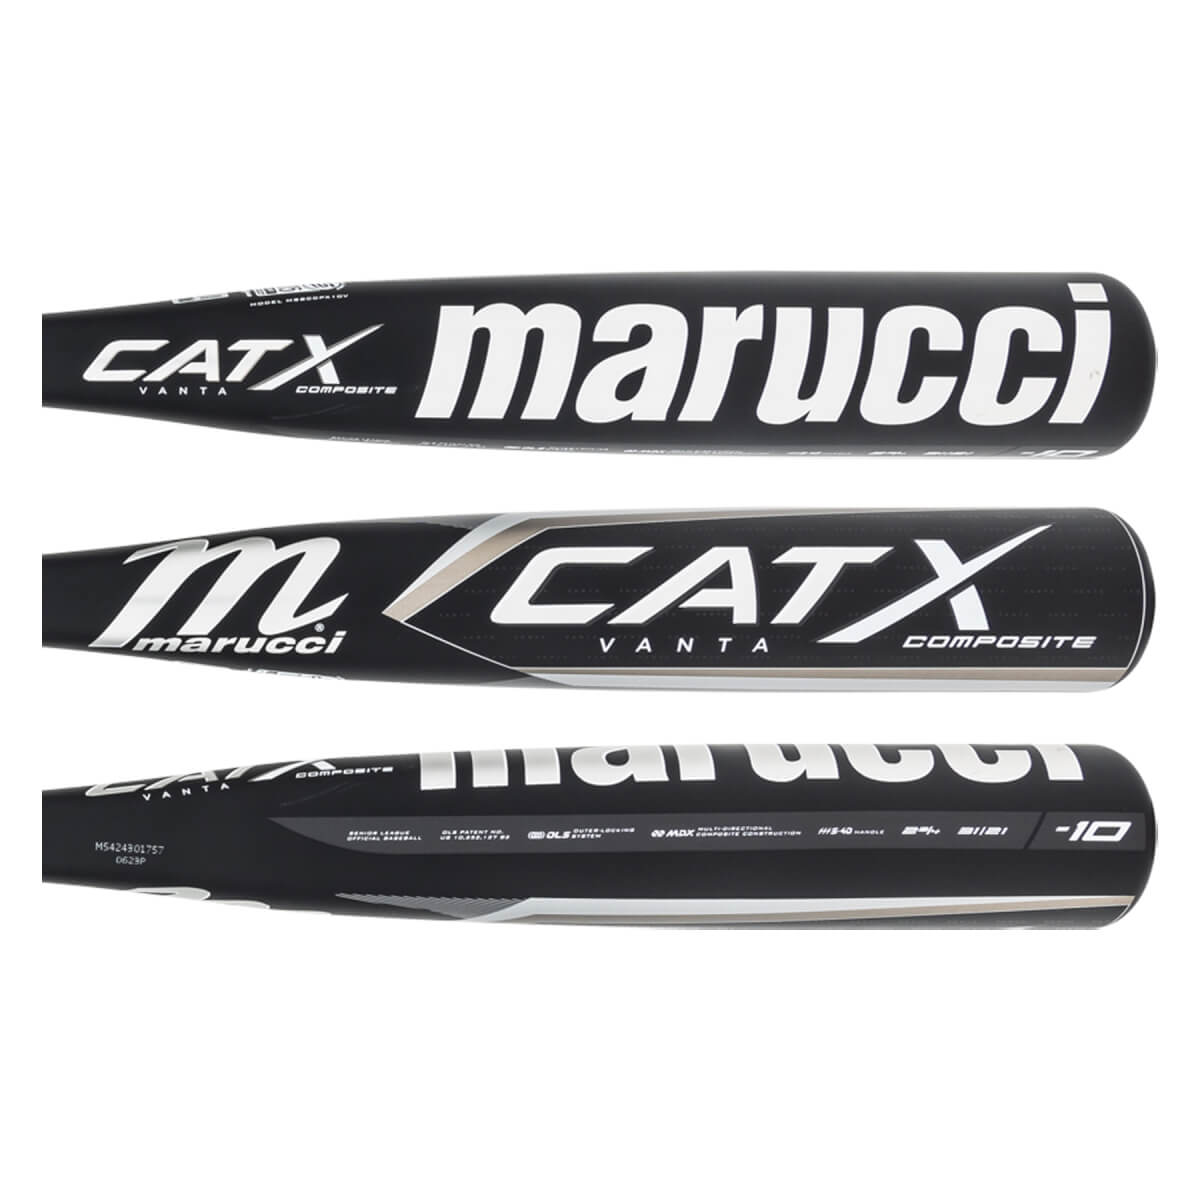 Marucci CATX Vanta Composite (-10) USSSA Baseball Bat